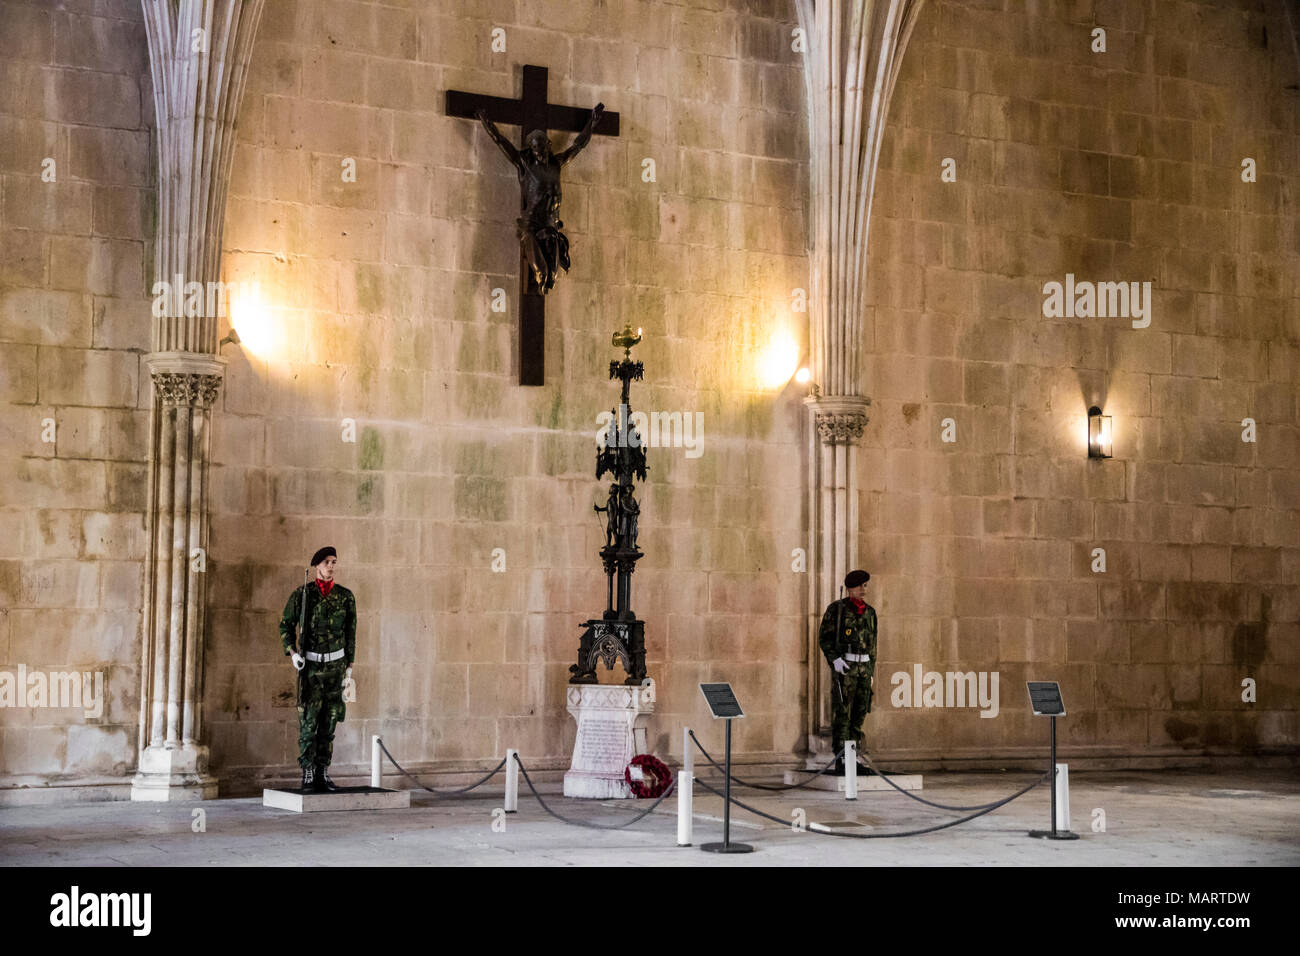 Batalha, Portogallo. Militari che sorvegliano la tomba del Soldato sconosciuto all'interno del Monastero di Santa Maria da Vitoria. Un sito del Patrimonio mondiale dal 1983 Foto Stock